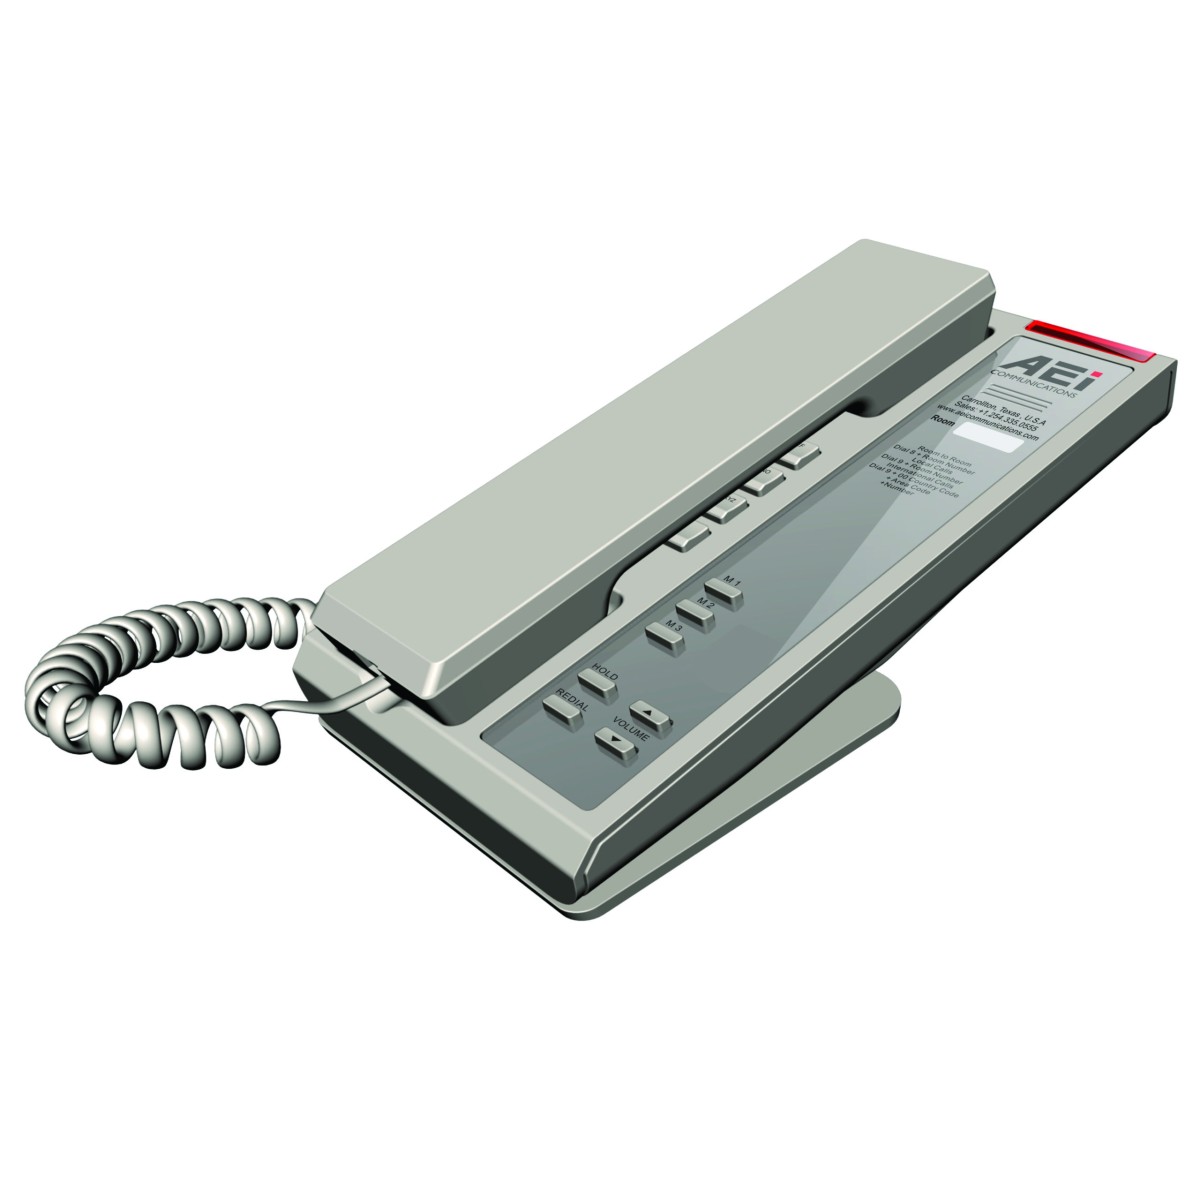 AEI SLN-1103 Slim Single-Line IP Corded Telephone